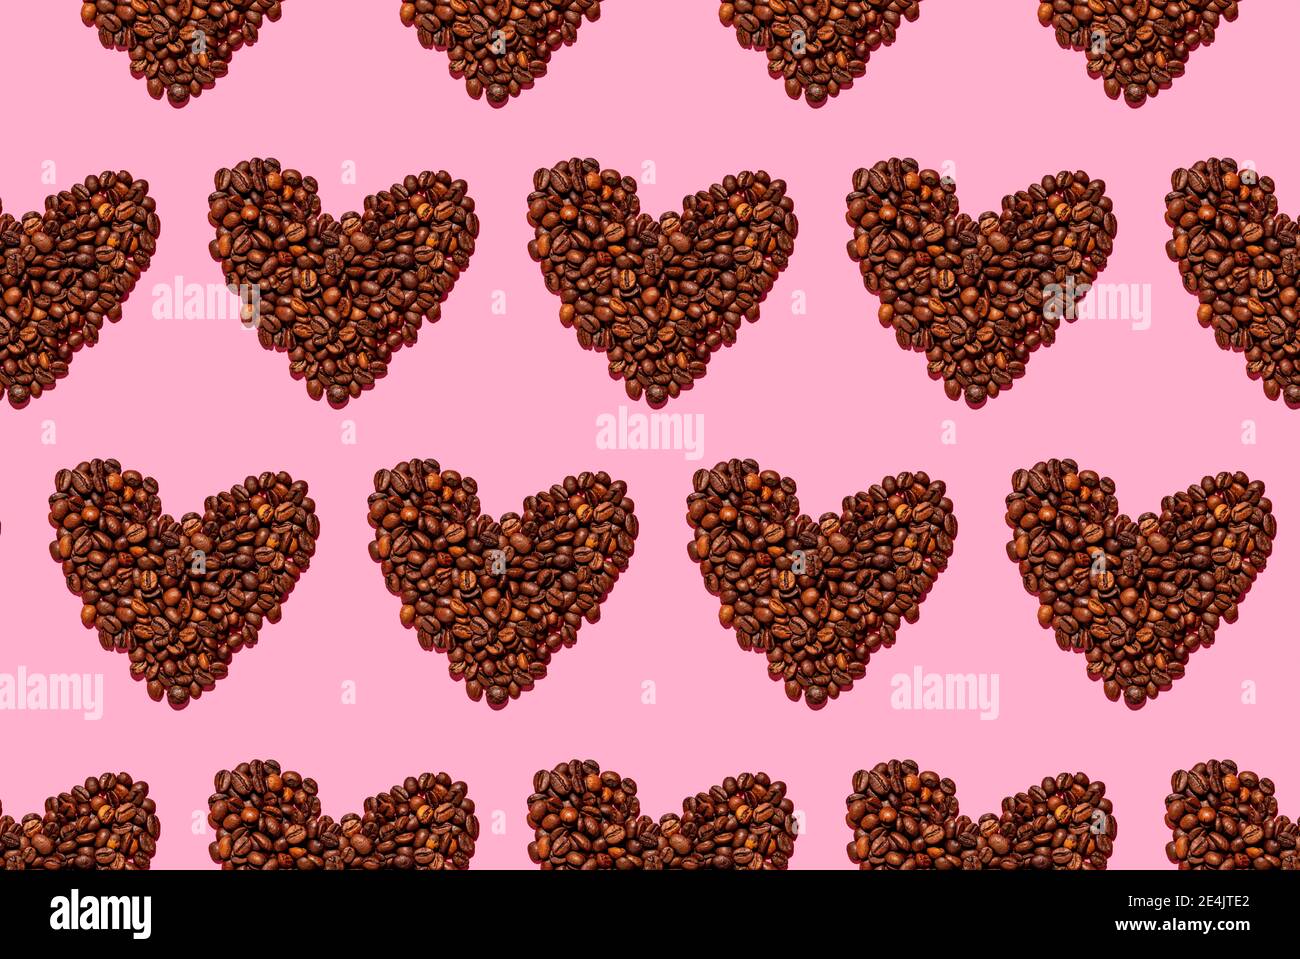 Muster von gerösteten Kaffeebohnen in Herzform angeordnet Stockfoto